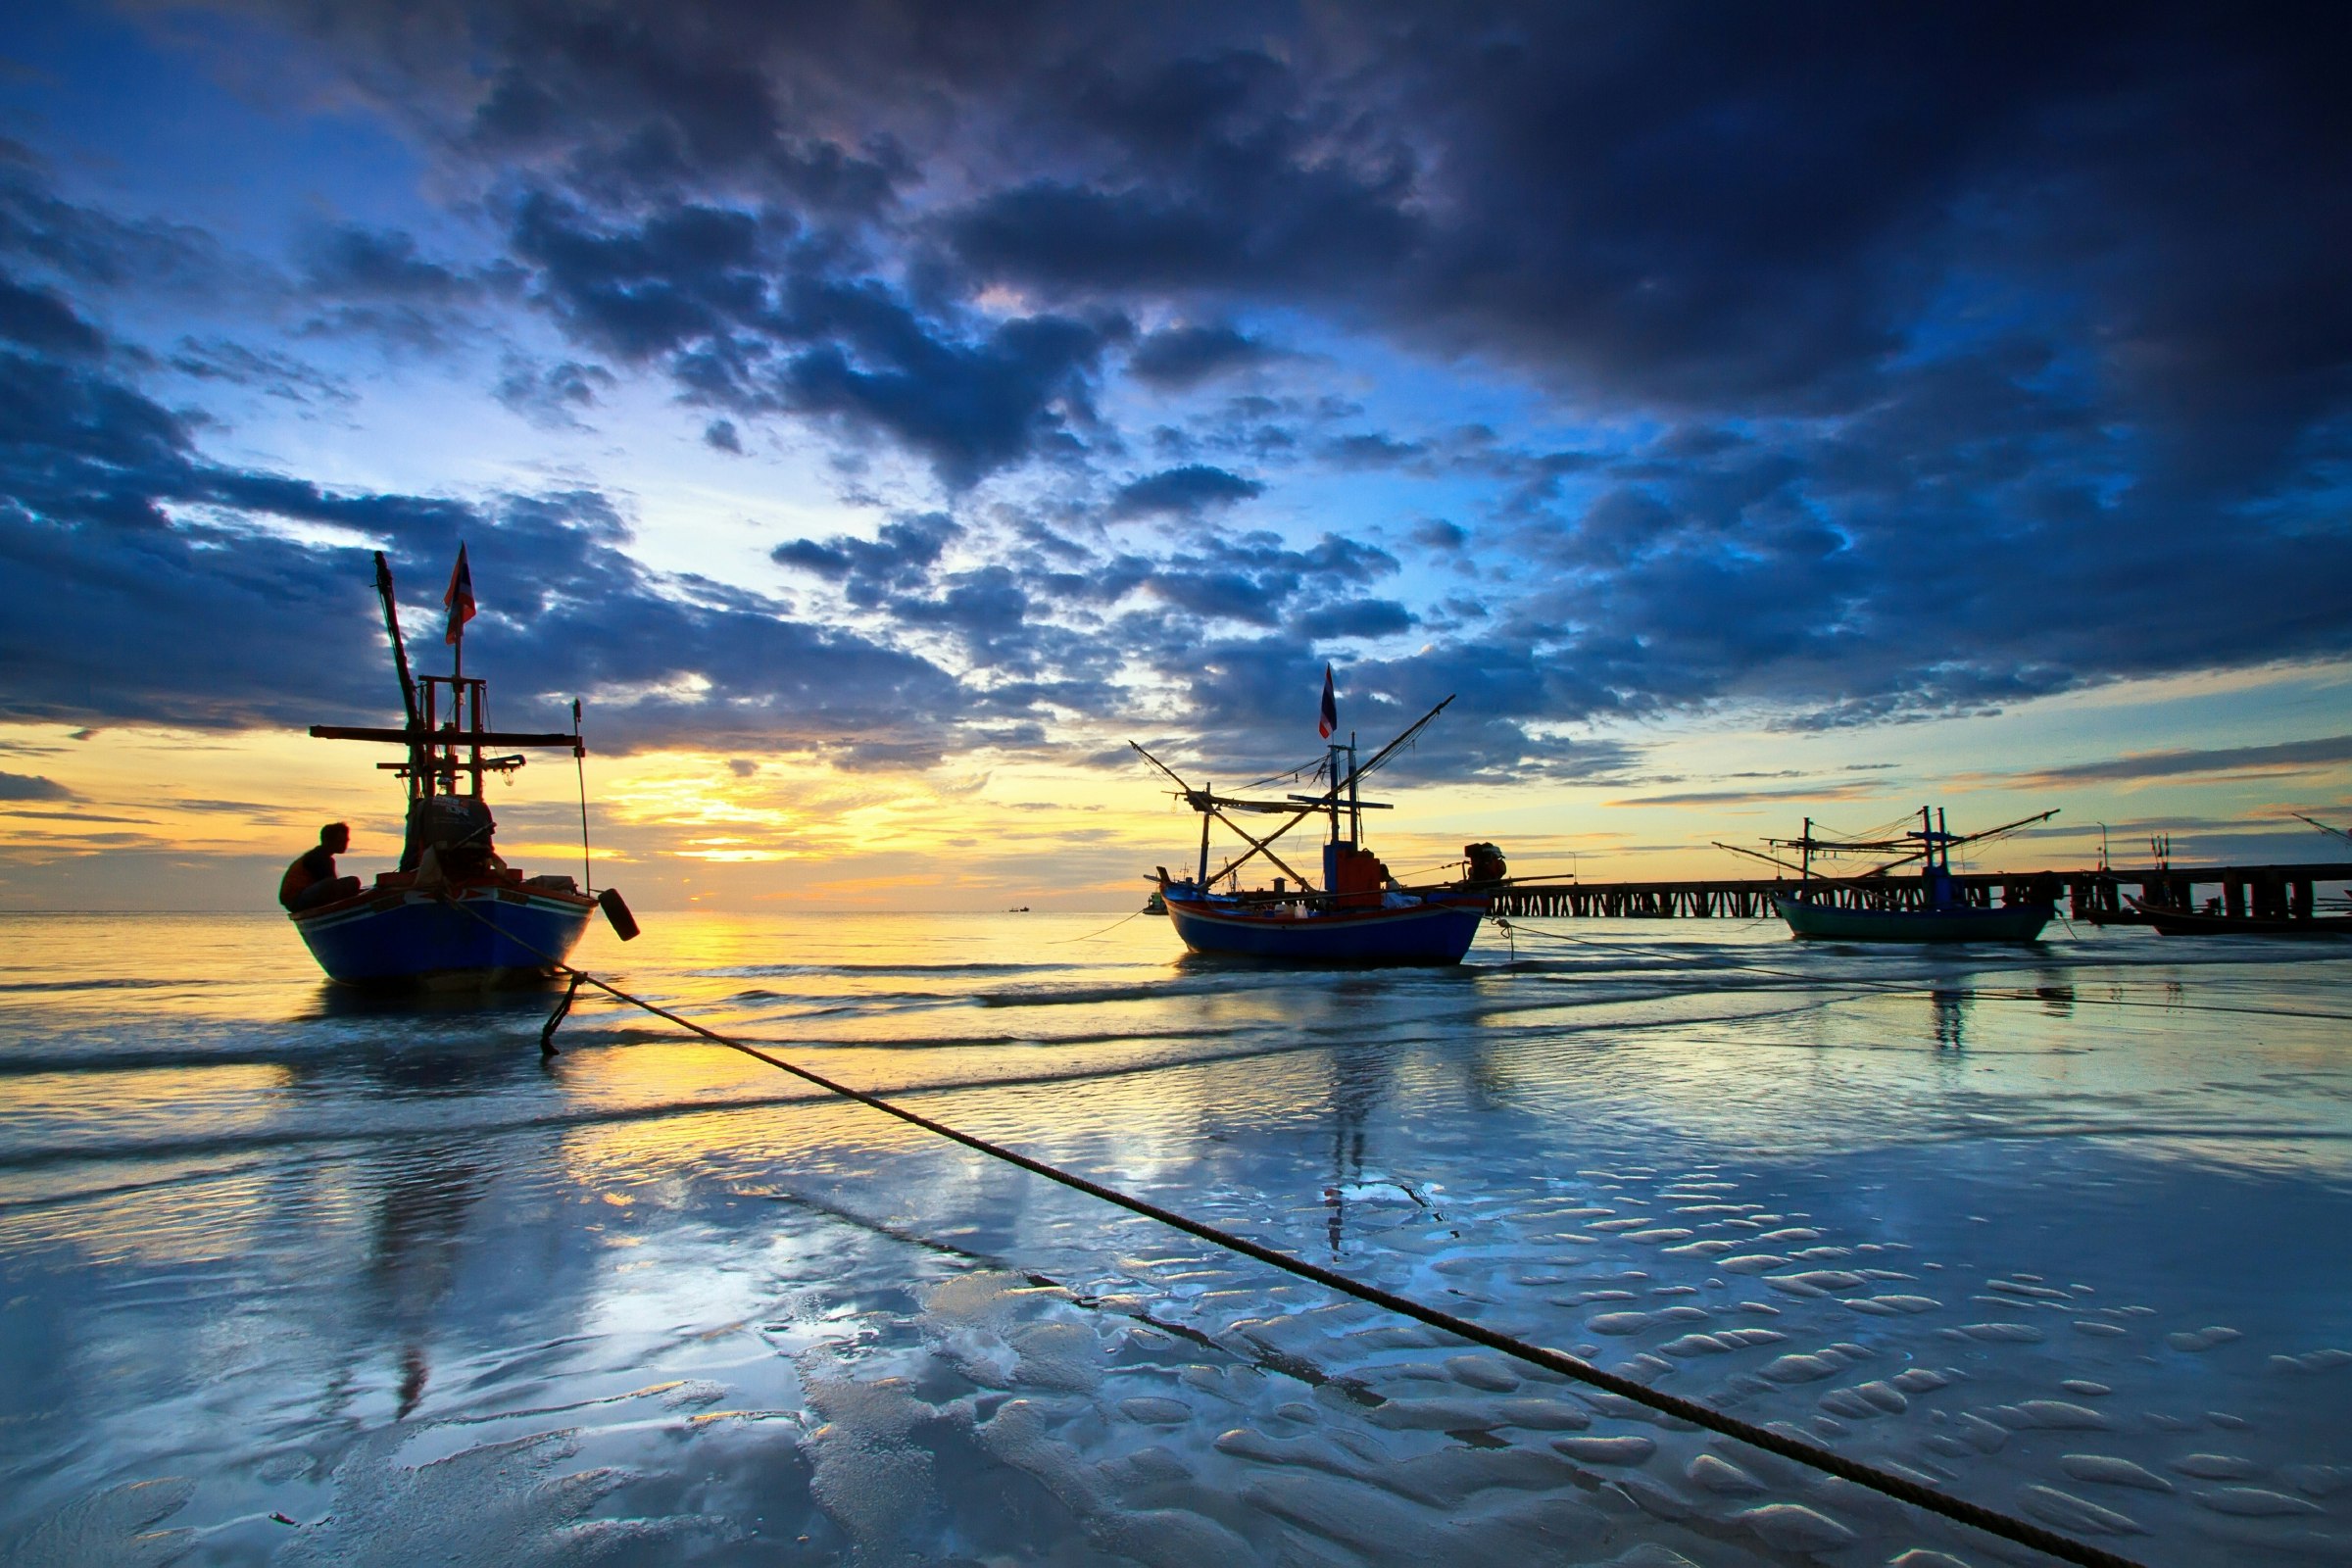 Fishing boats at the Hua Hin beach, Thailand 